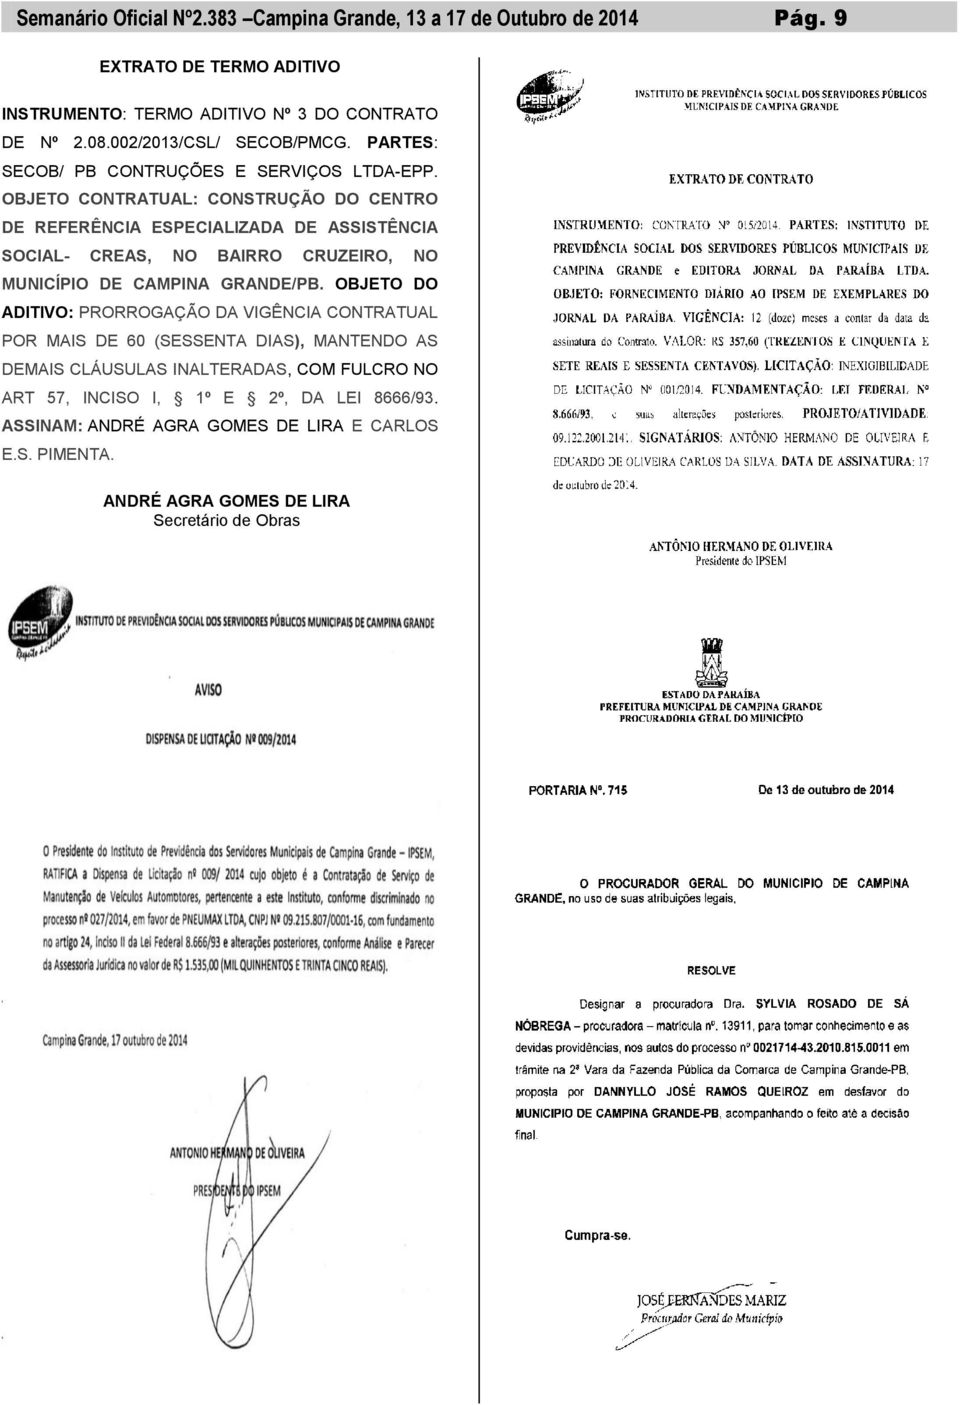 OBJETO CONTRATUAL: CONSTRUÇÃO DO CENTRO DE REFERÊNCIA ESPECIALIZADA DE ASSISTÊNCIA SOCIAL- CREAS, NO BAIRRO CRUZEIRO, NO MUNICÍPIO DE CAMPINA GRANDE/PB.